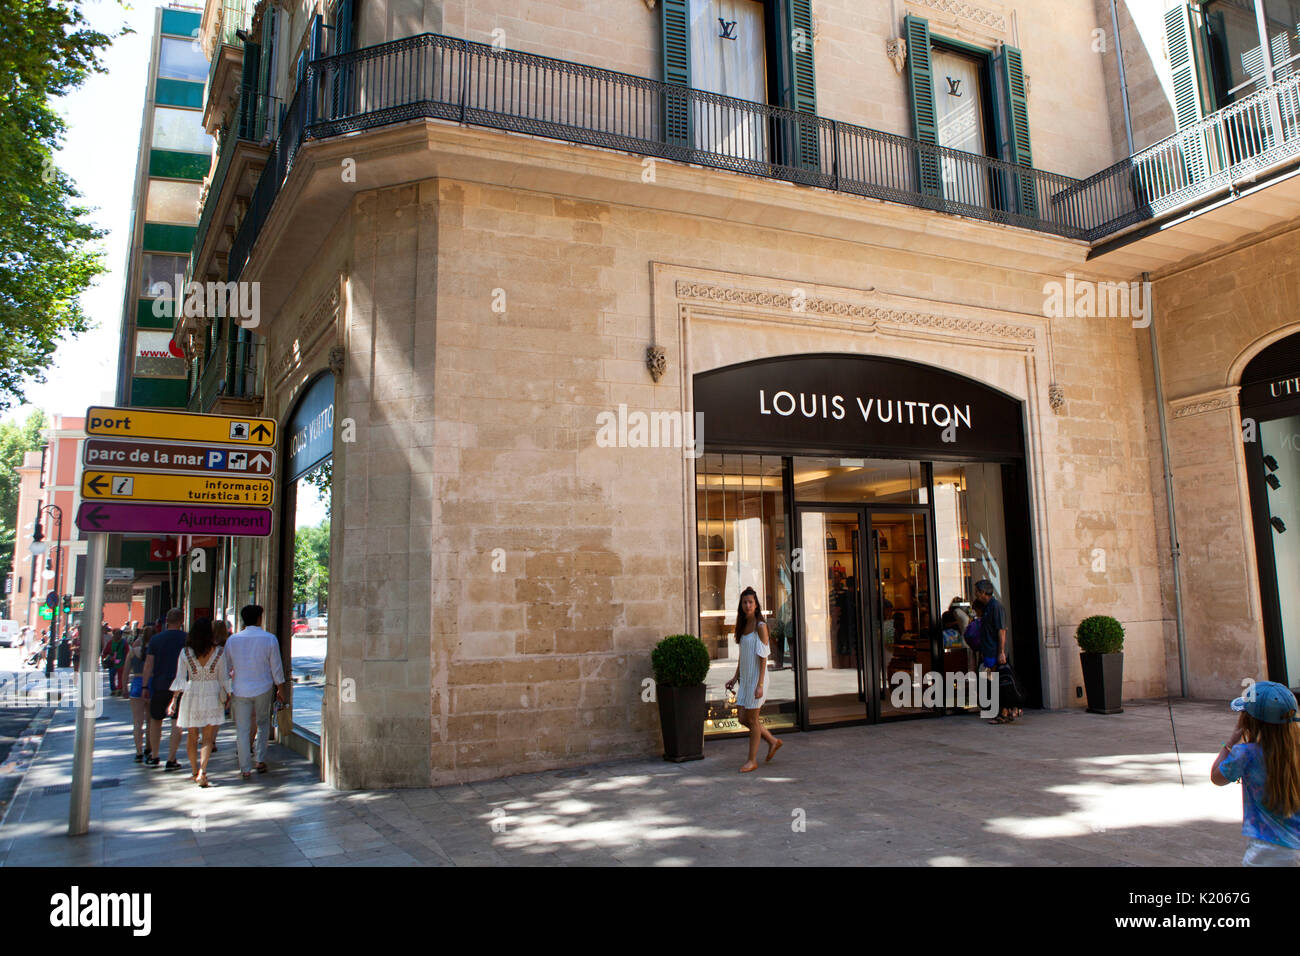 Tienda Louis Vuitton Palma de Mallorca - España